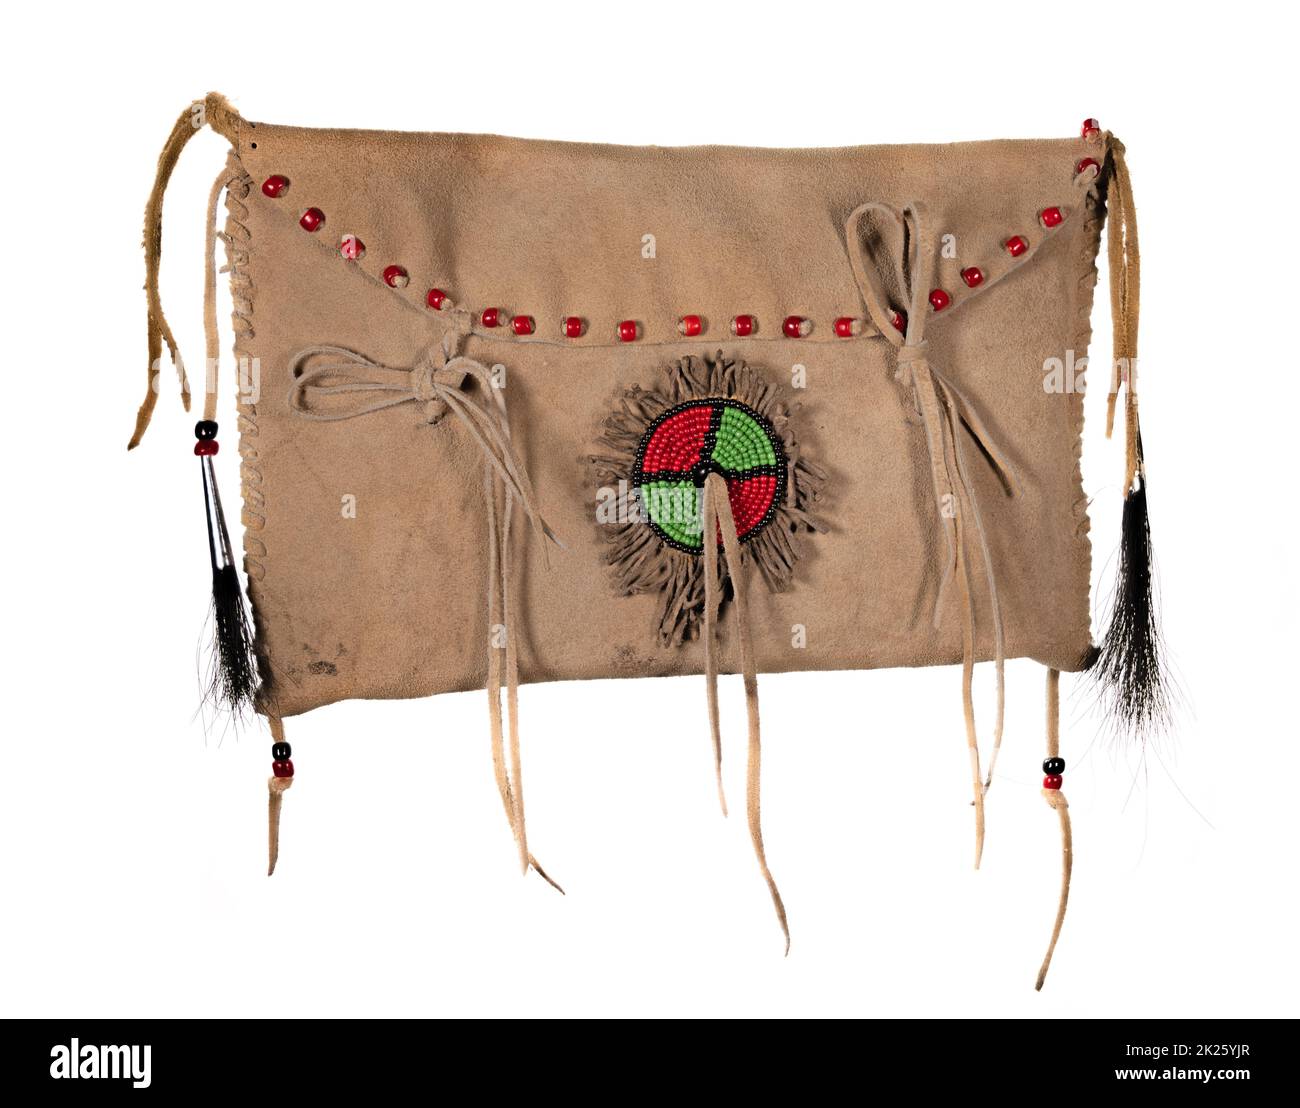 Eine Tüte nordamerikanischer Indianer. Hergestellt aus Haut mit bunten Glasperlen und Lederschnüren Stockfoto